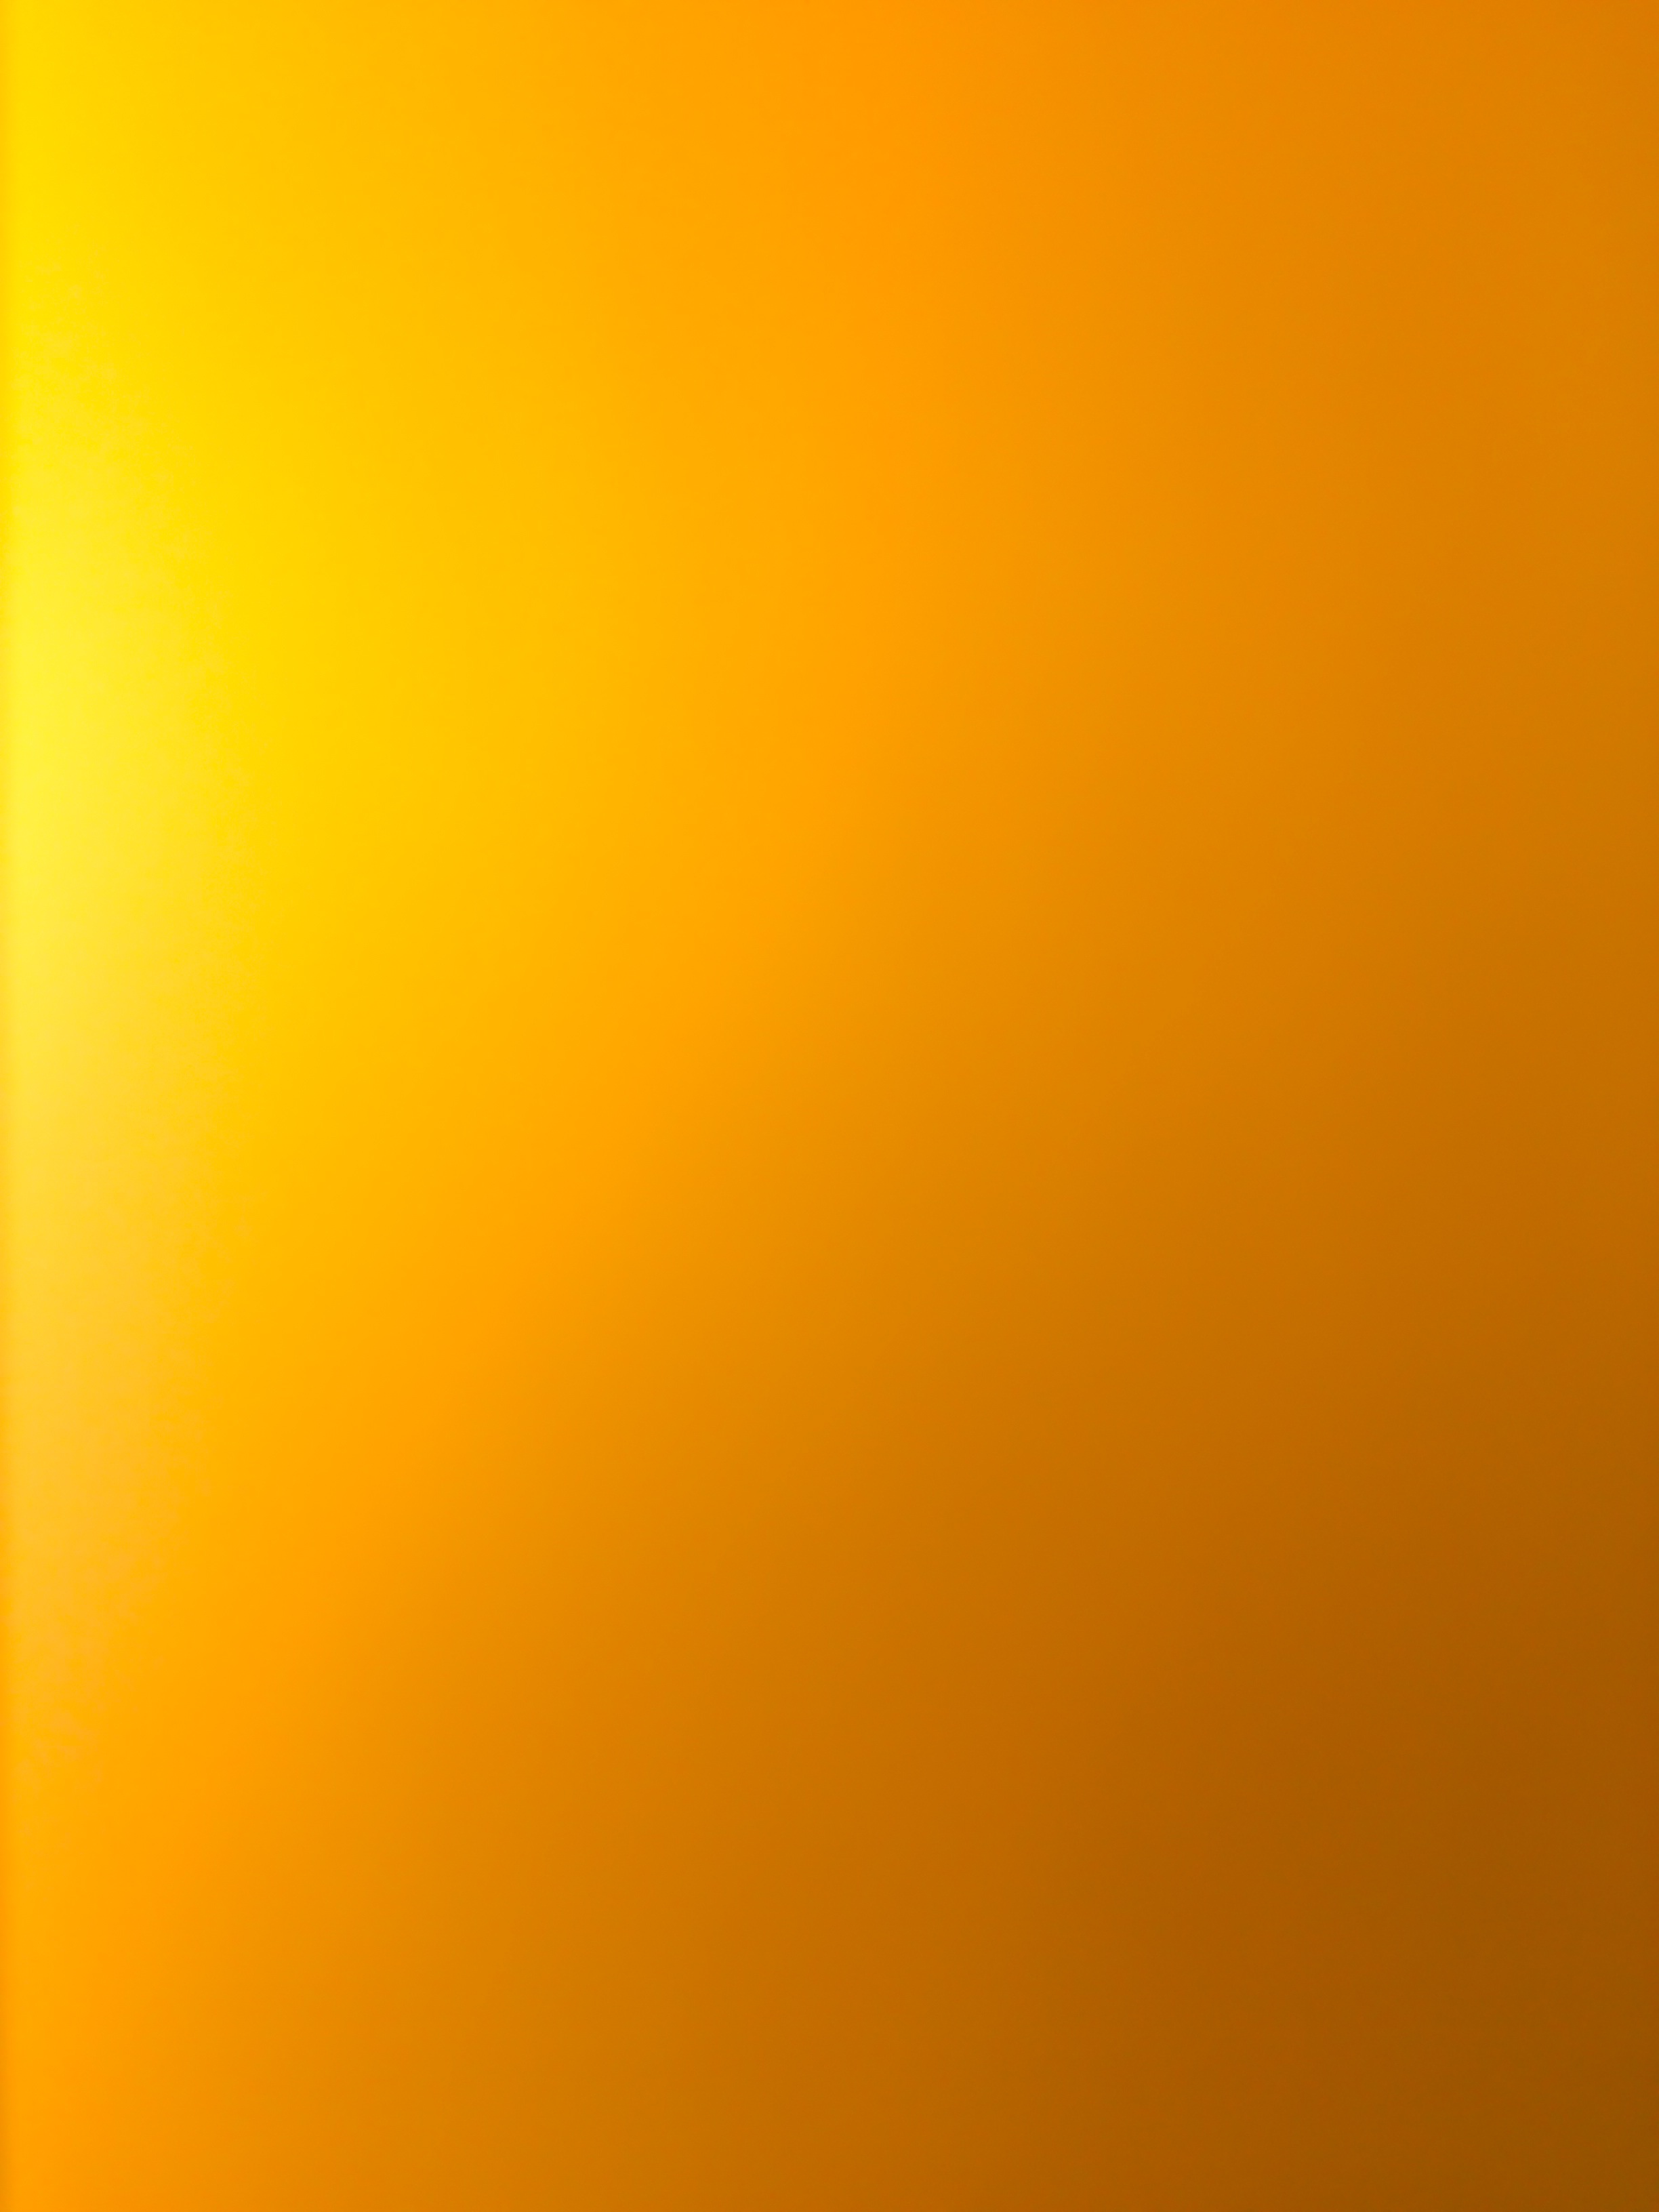 tapete kuning,orange,gelb,bernstein